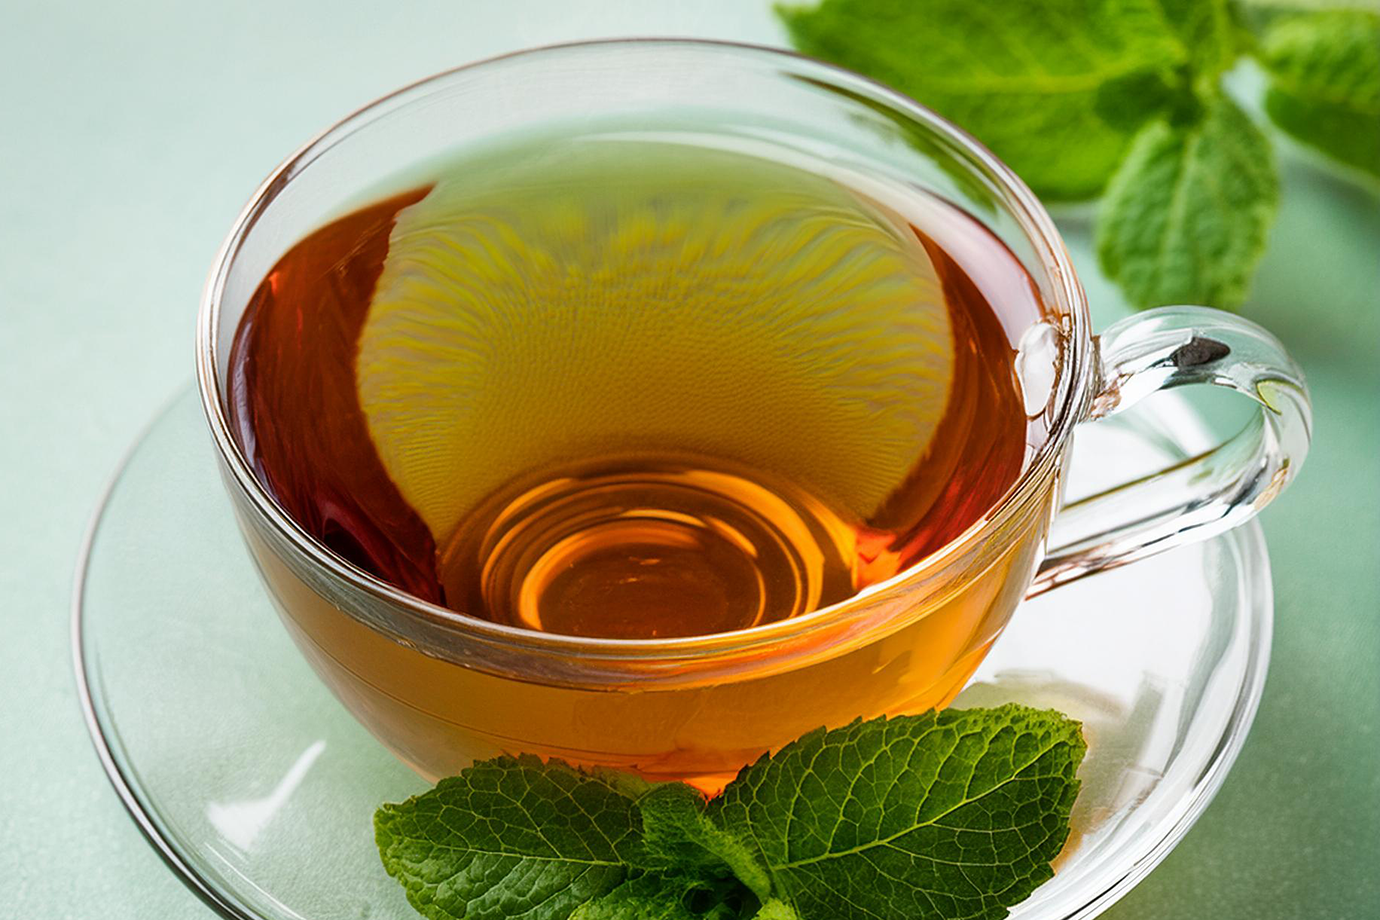 Esse chá verde com hortelã é muito usado como digestivo, perfeito após uma refeição para acalmar o estômago. A hortelã é famosa por tranquilizar a mente e aguçar os sentidos, tornando esse chá perfeito para qualquer hora do dia. Particularmente refrescante nos dias de verão.